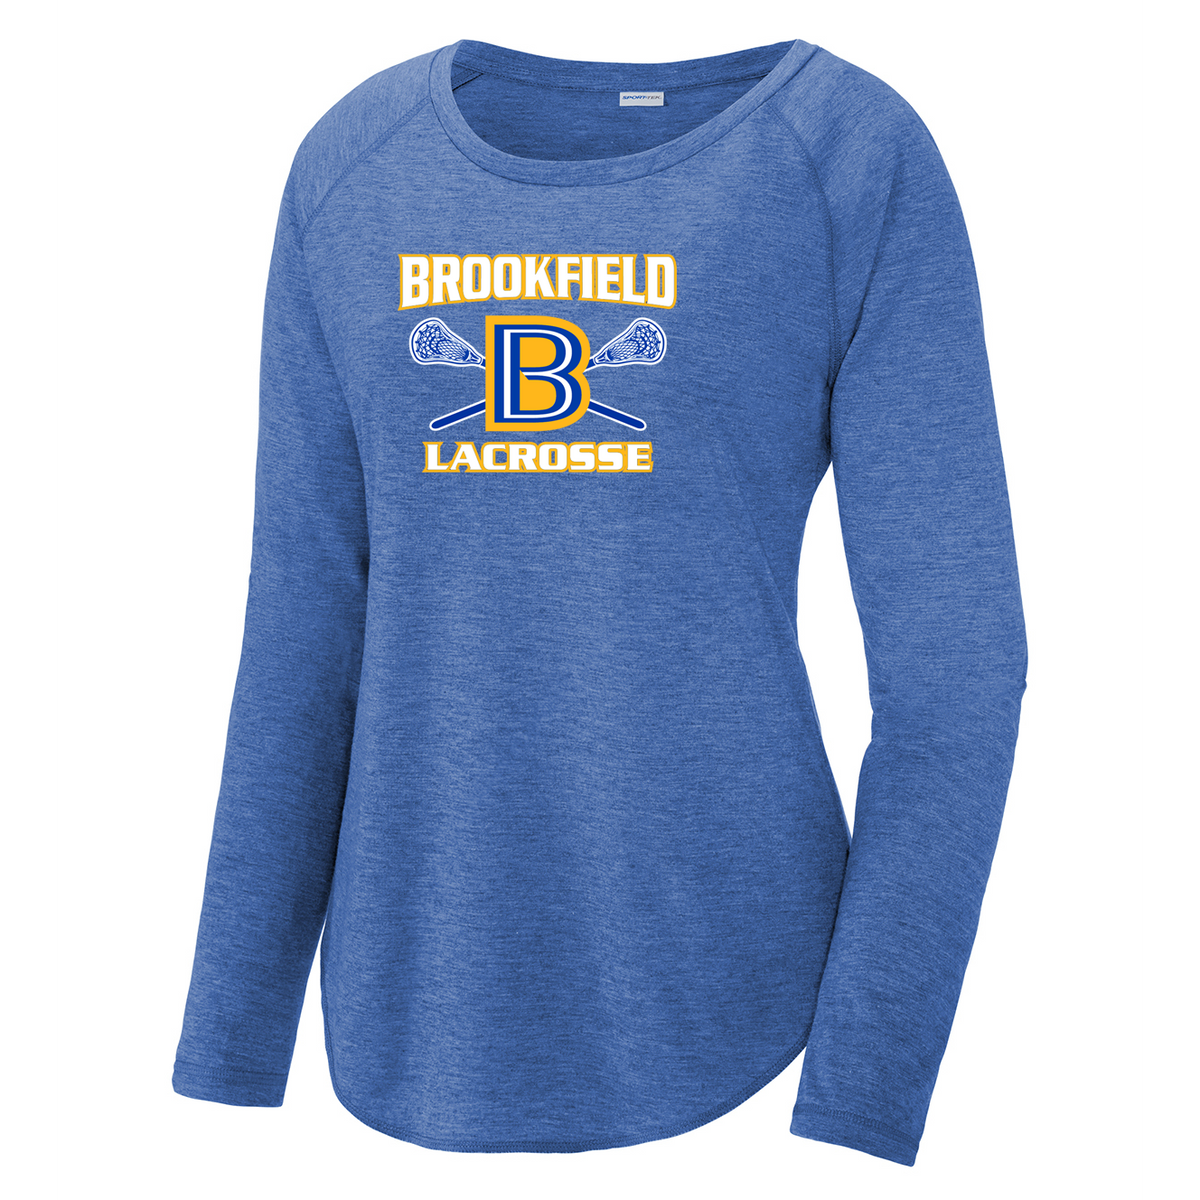 Brookfield Lacrosse Women's Raglan Long Sleeve CottonTouch